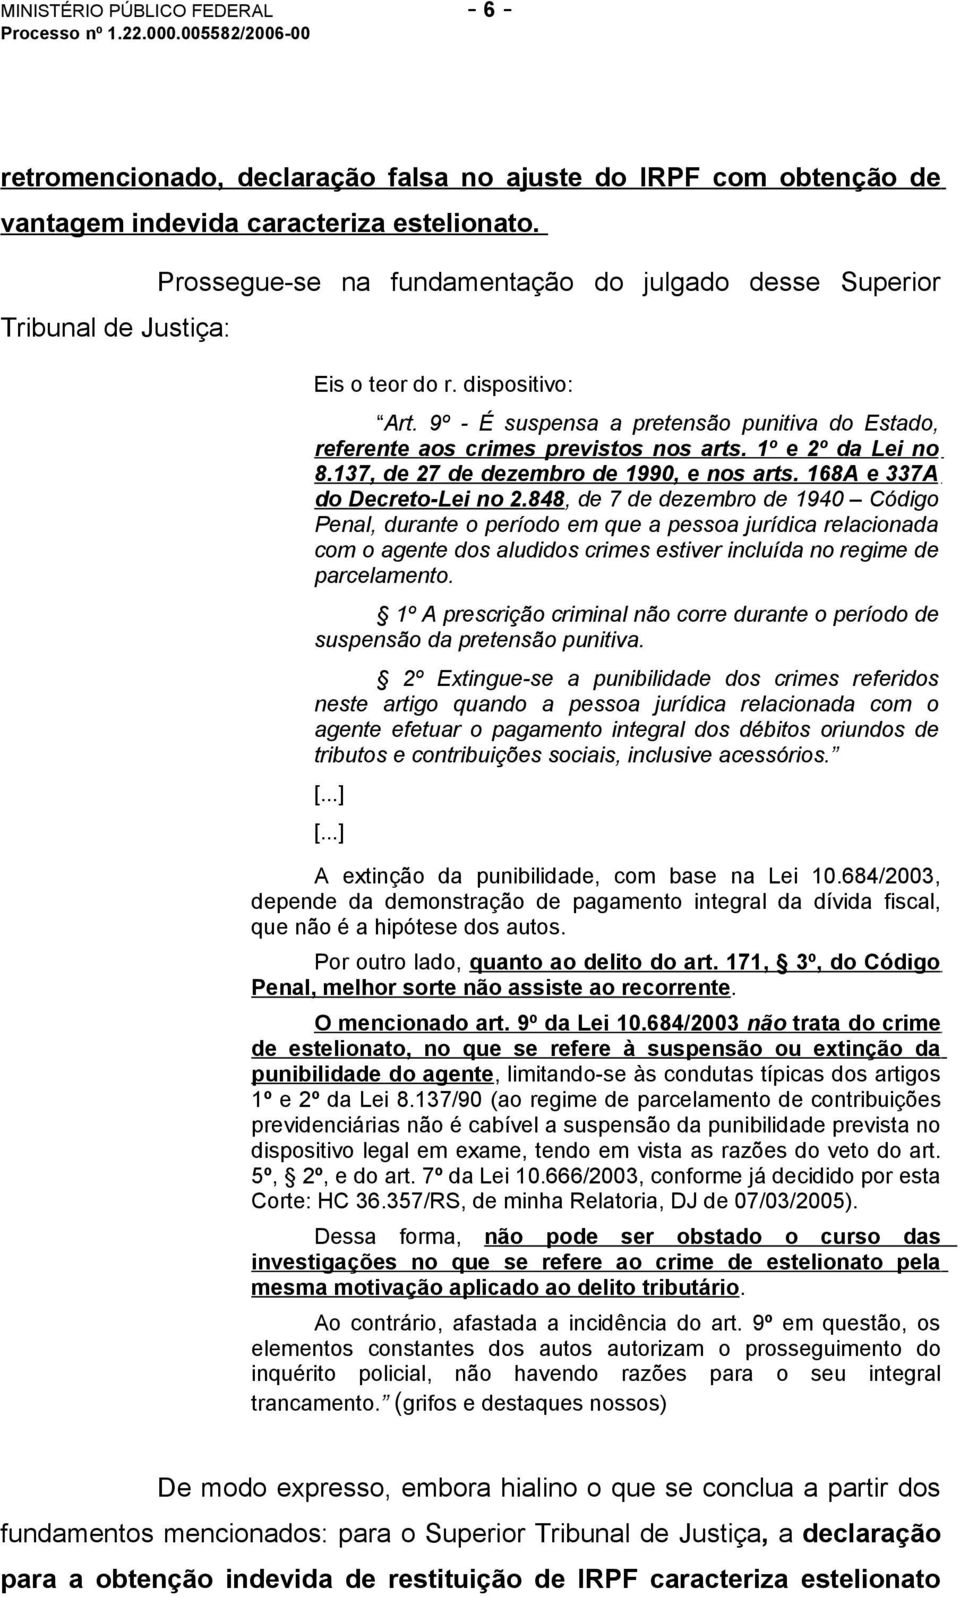 1º e 2º da Lei no 8.137, de 27 de dezembro de 1990, e nos arts. 168A e 337A do Decreto-Lei no 2.